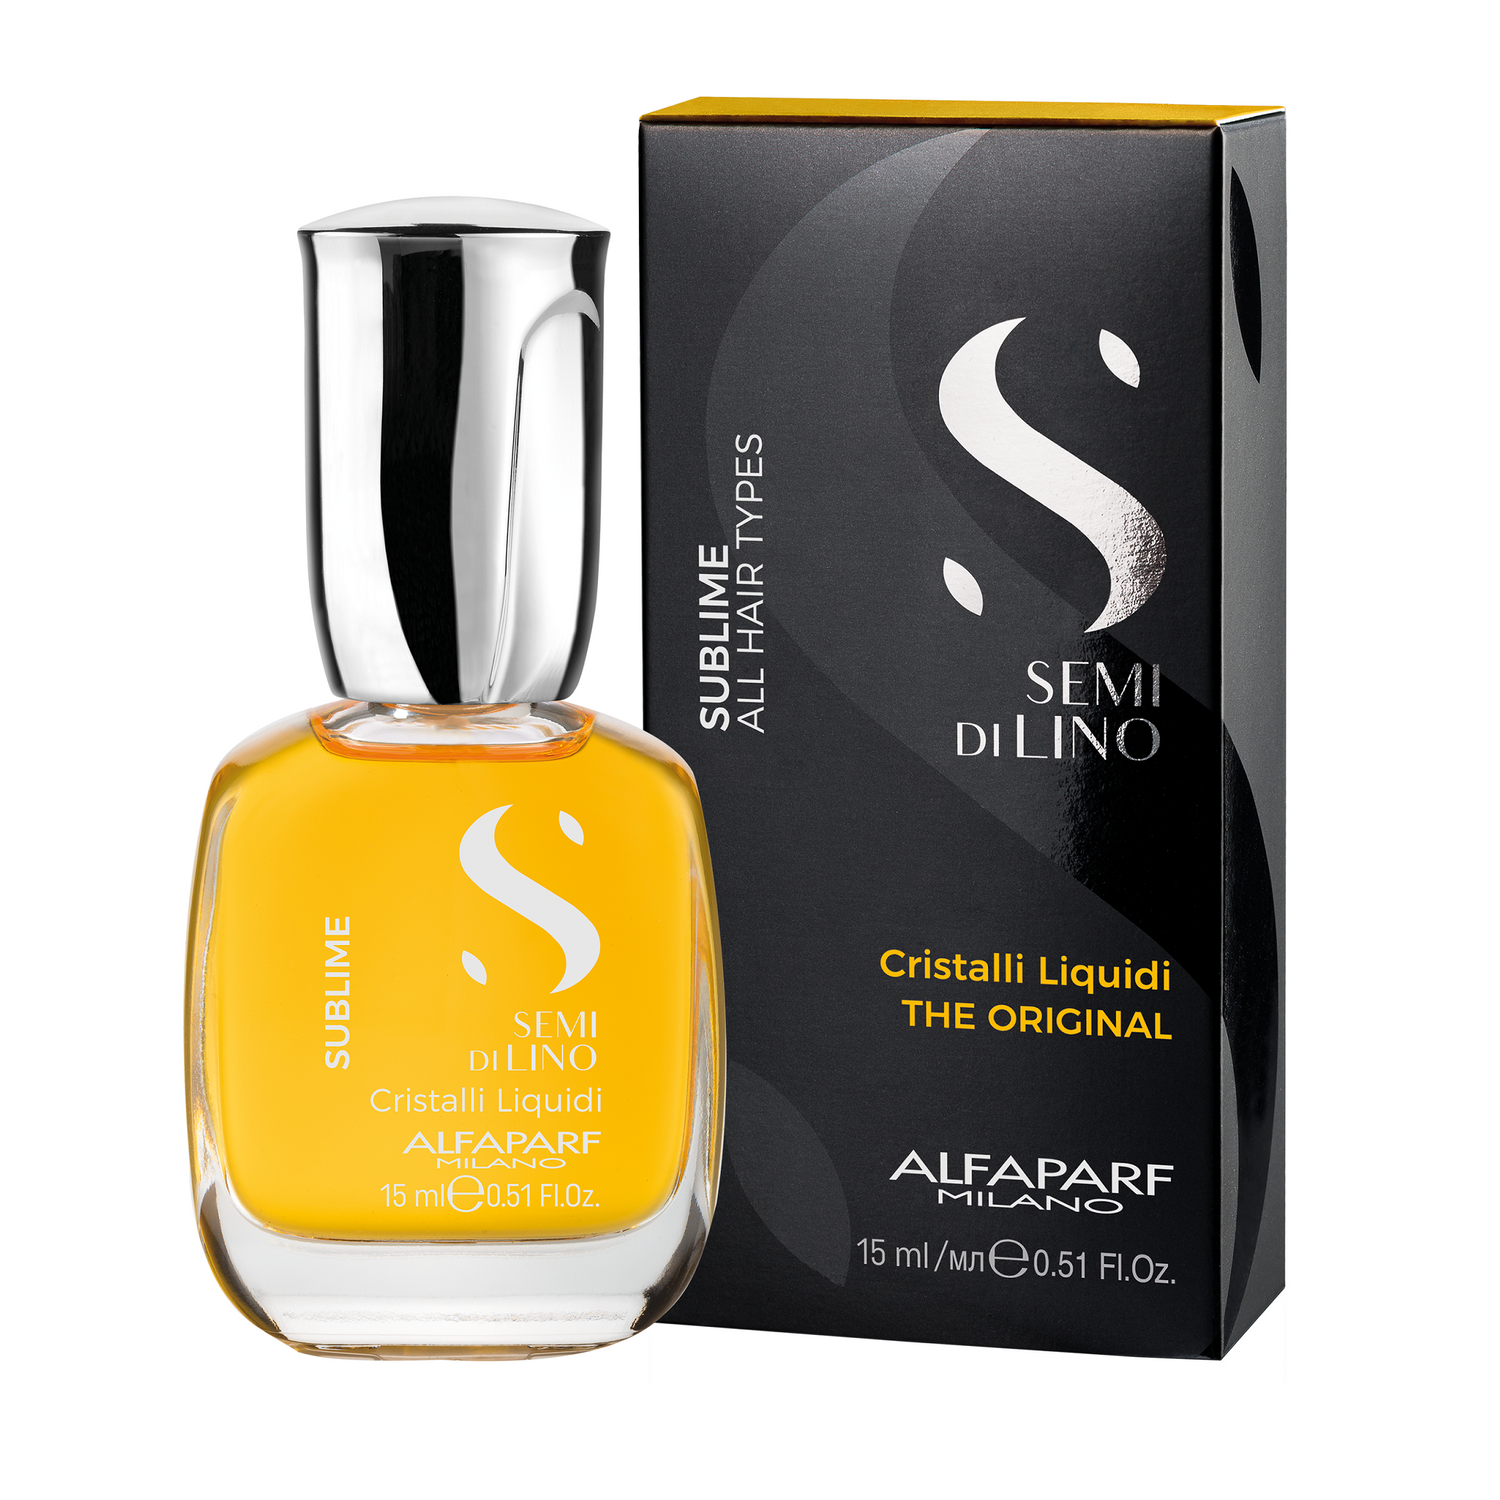 Alfaparf Milano Semi Di Lino Sublime Cristalli Liquidi Hair Oil Serum 15ml bottle box